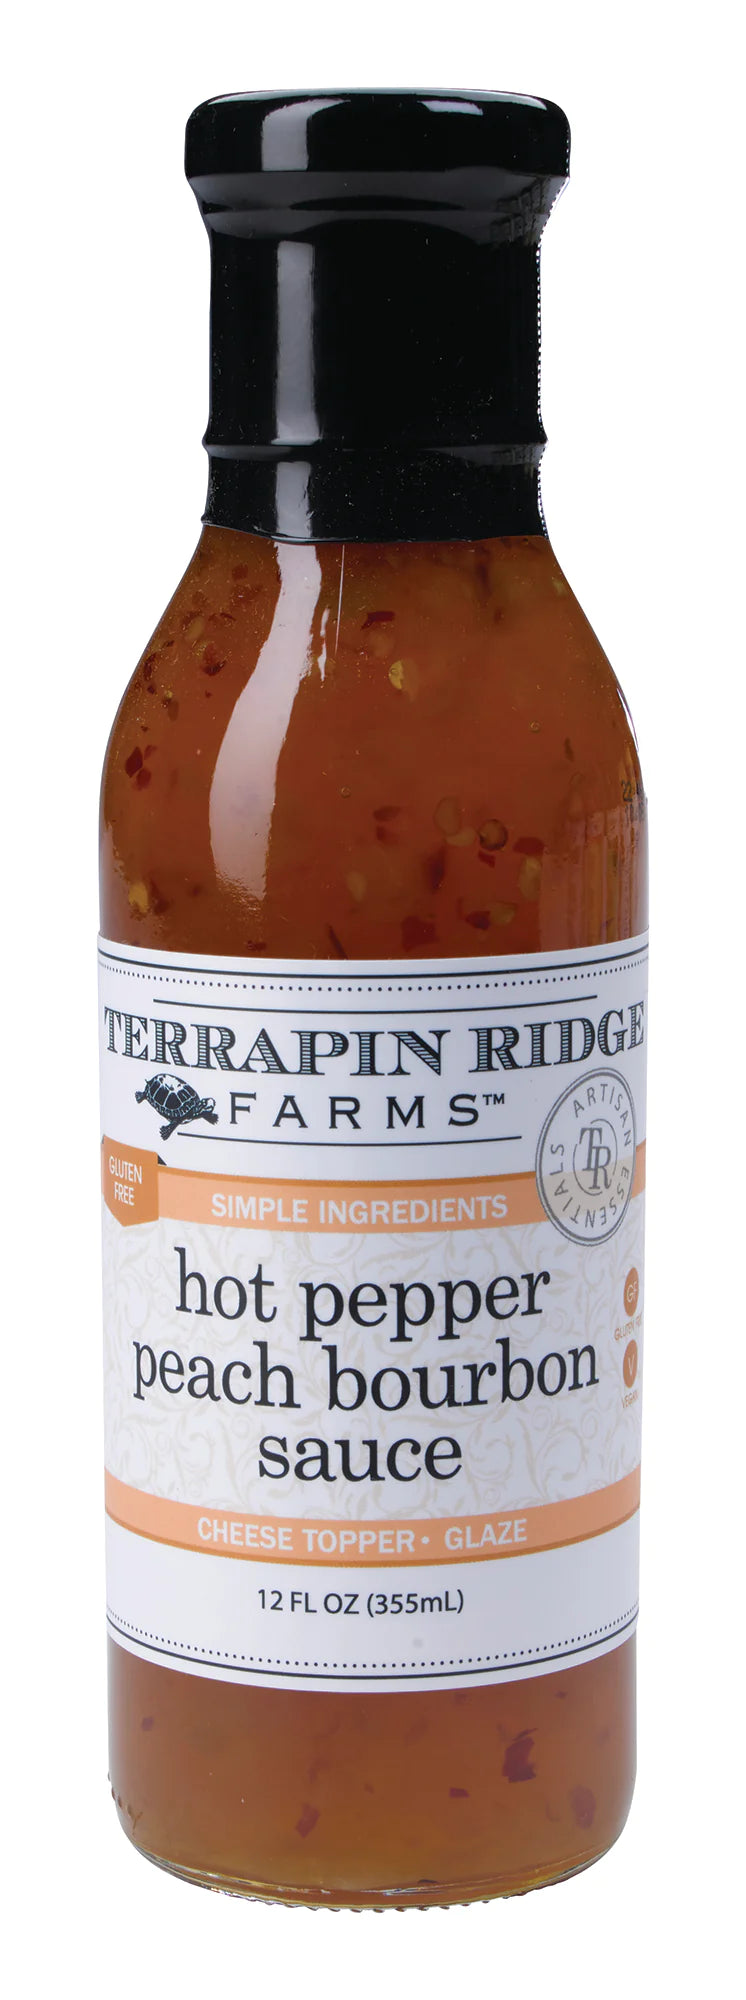 A jar of Terrapin Ridge Hot Pepper Peach Bourbon Sauce.